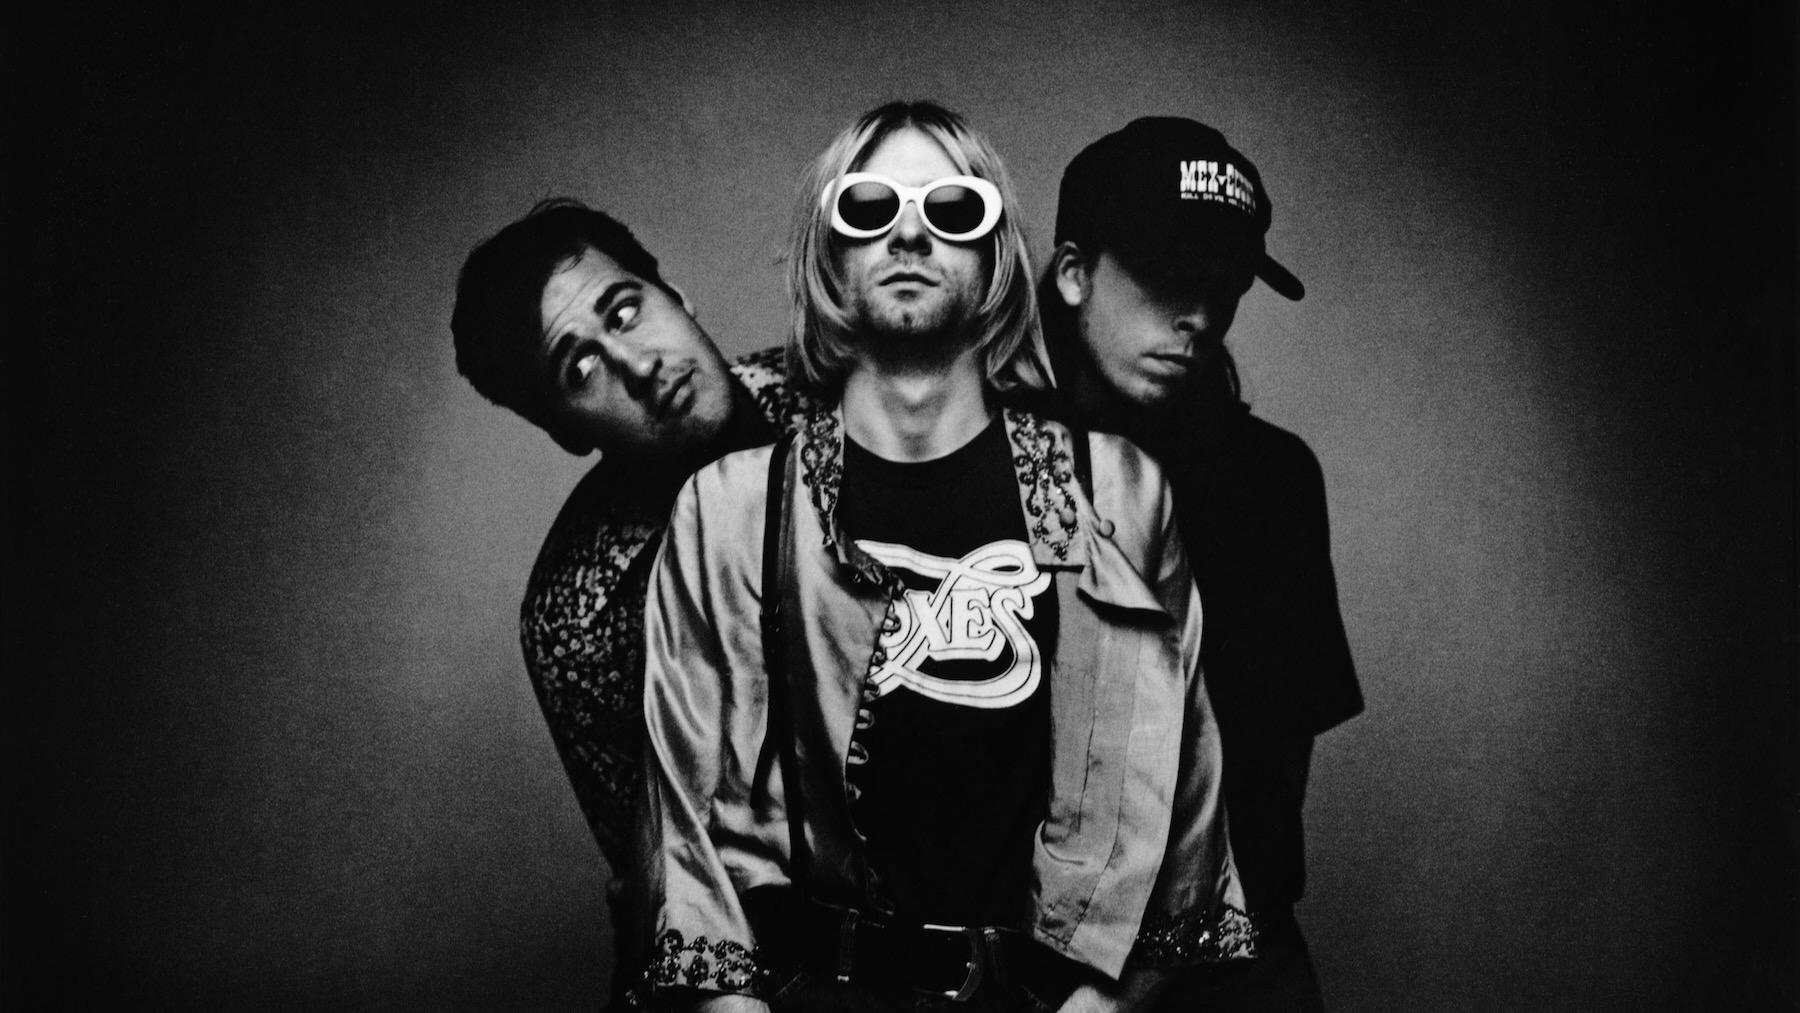 För 30 år sedan gav Nirvana ut det som skulle bli deras sista album ”In utero”. I dag släpps en jubileumsversion i olika format.